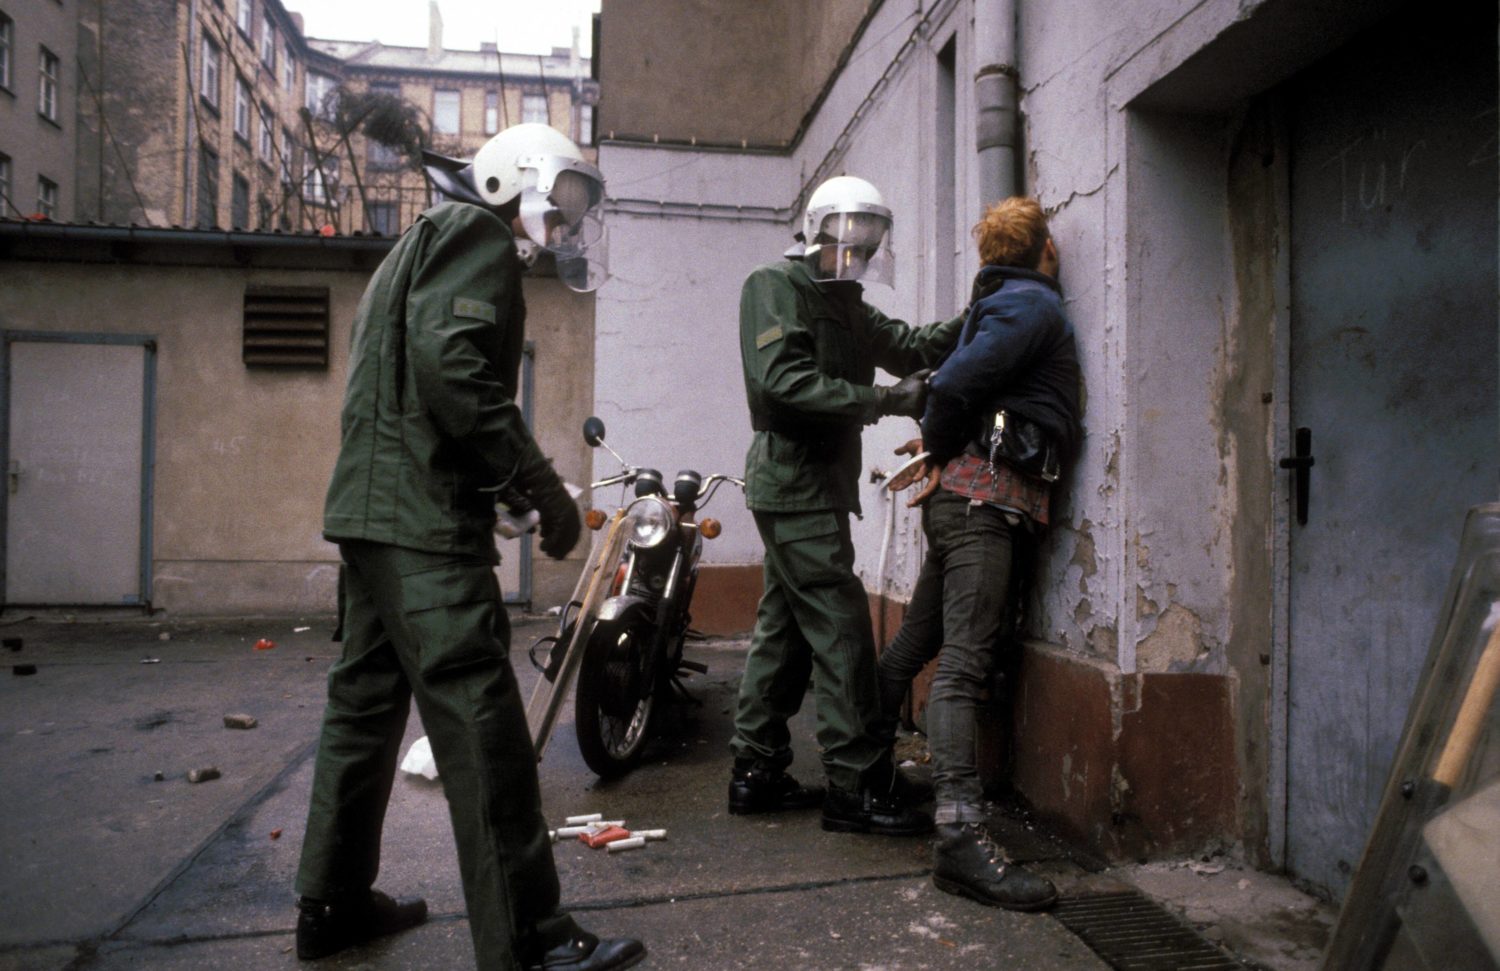 Polizisten fesseln einen Hausbesetzer. Foto: Imago/Werner Schulze